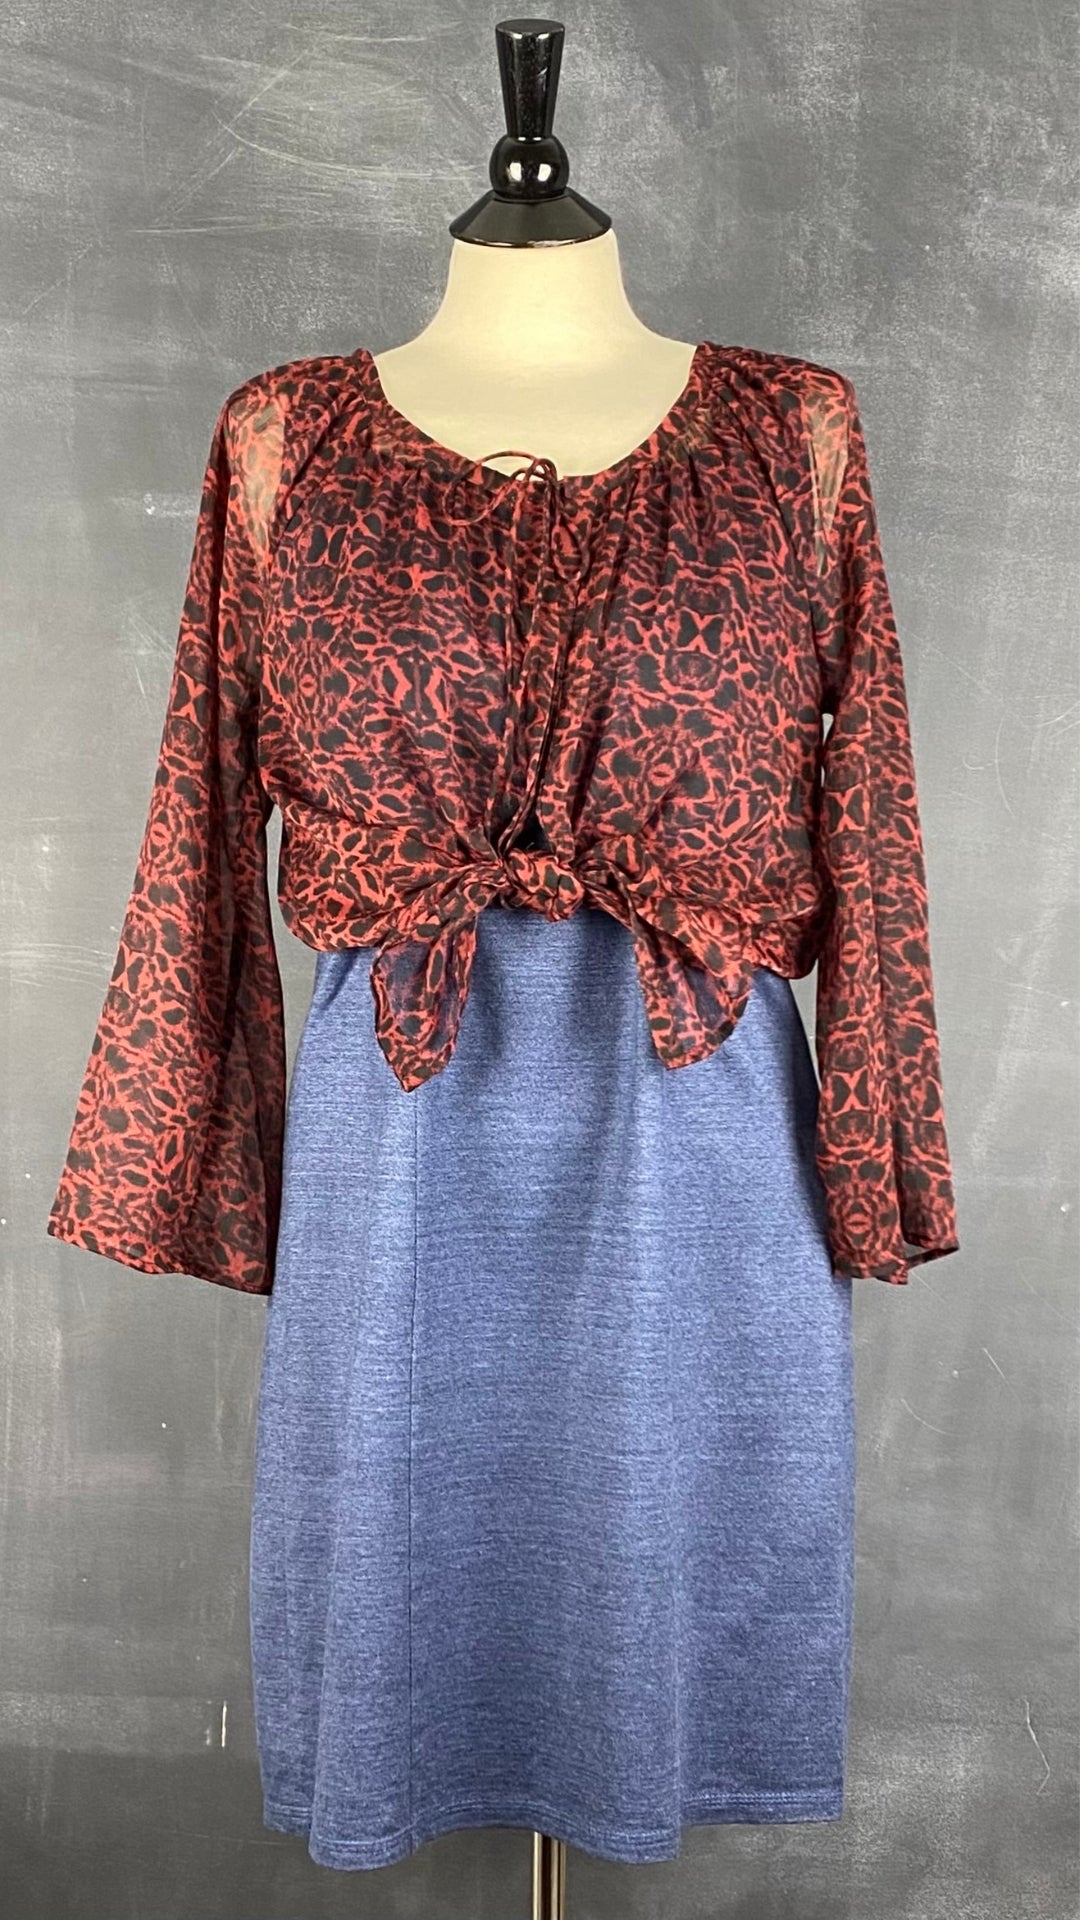 Robe cintrée en soie et lin sans manches Isabelle Elie Boutique, taille medium. Vue de l'agencement avec la blouse transparente rouge léopard.